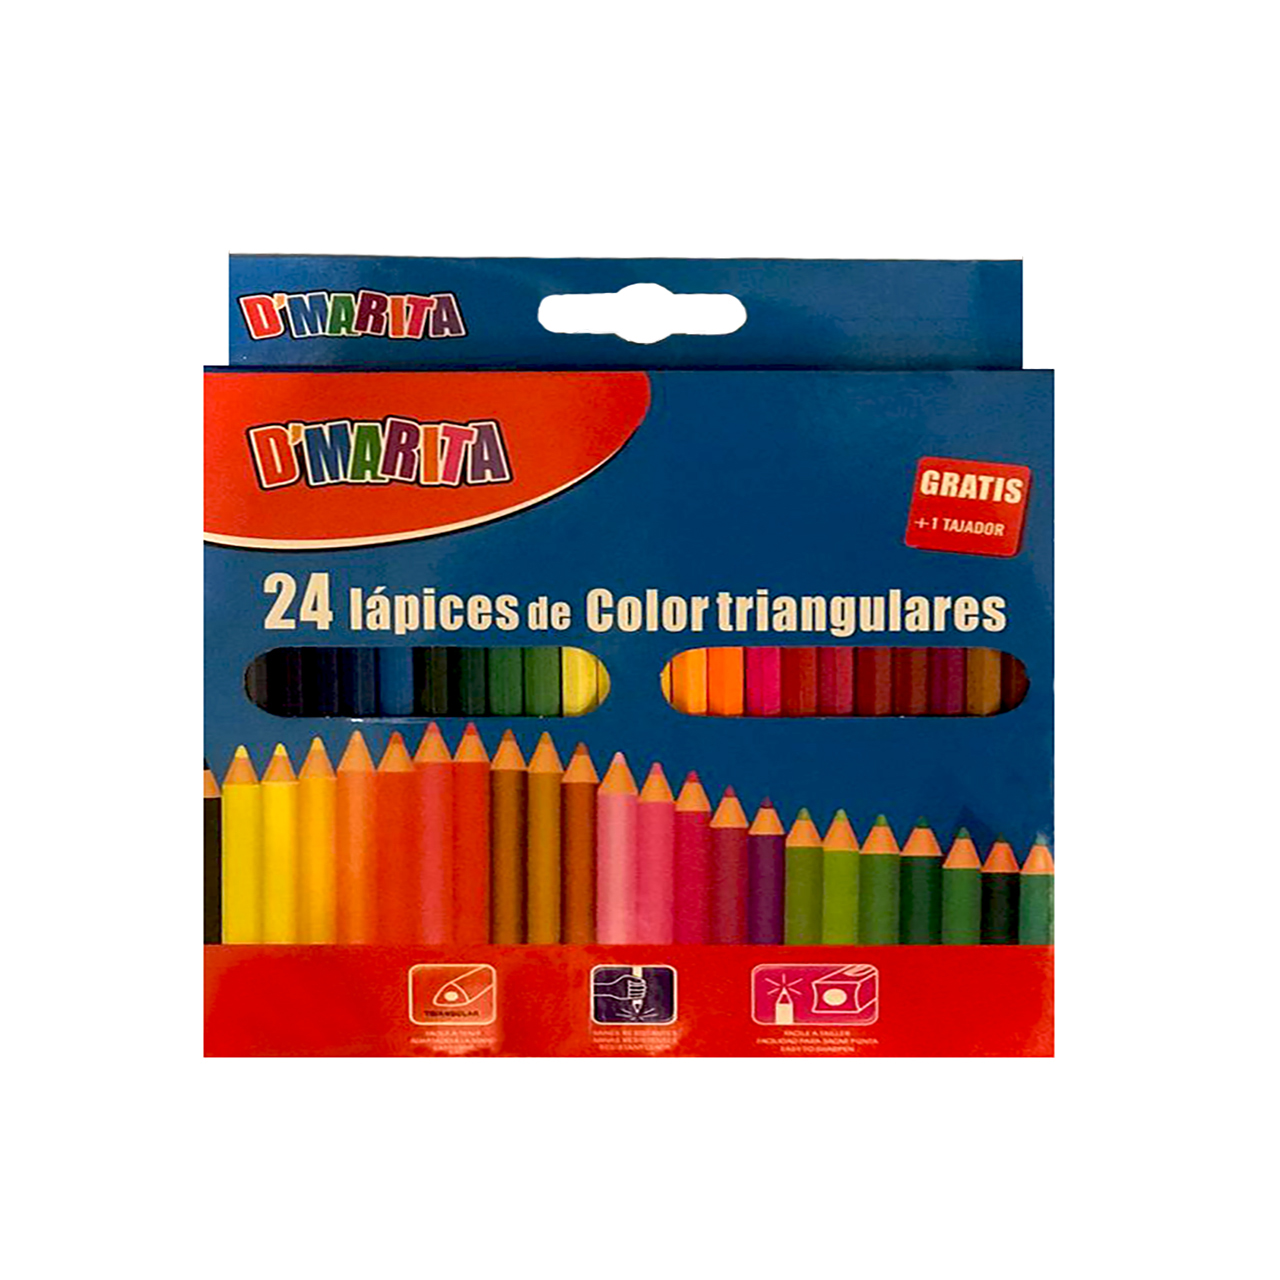 مداد رنگی 24 رنگ دیماریتا مدل گراتیس